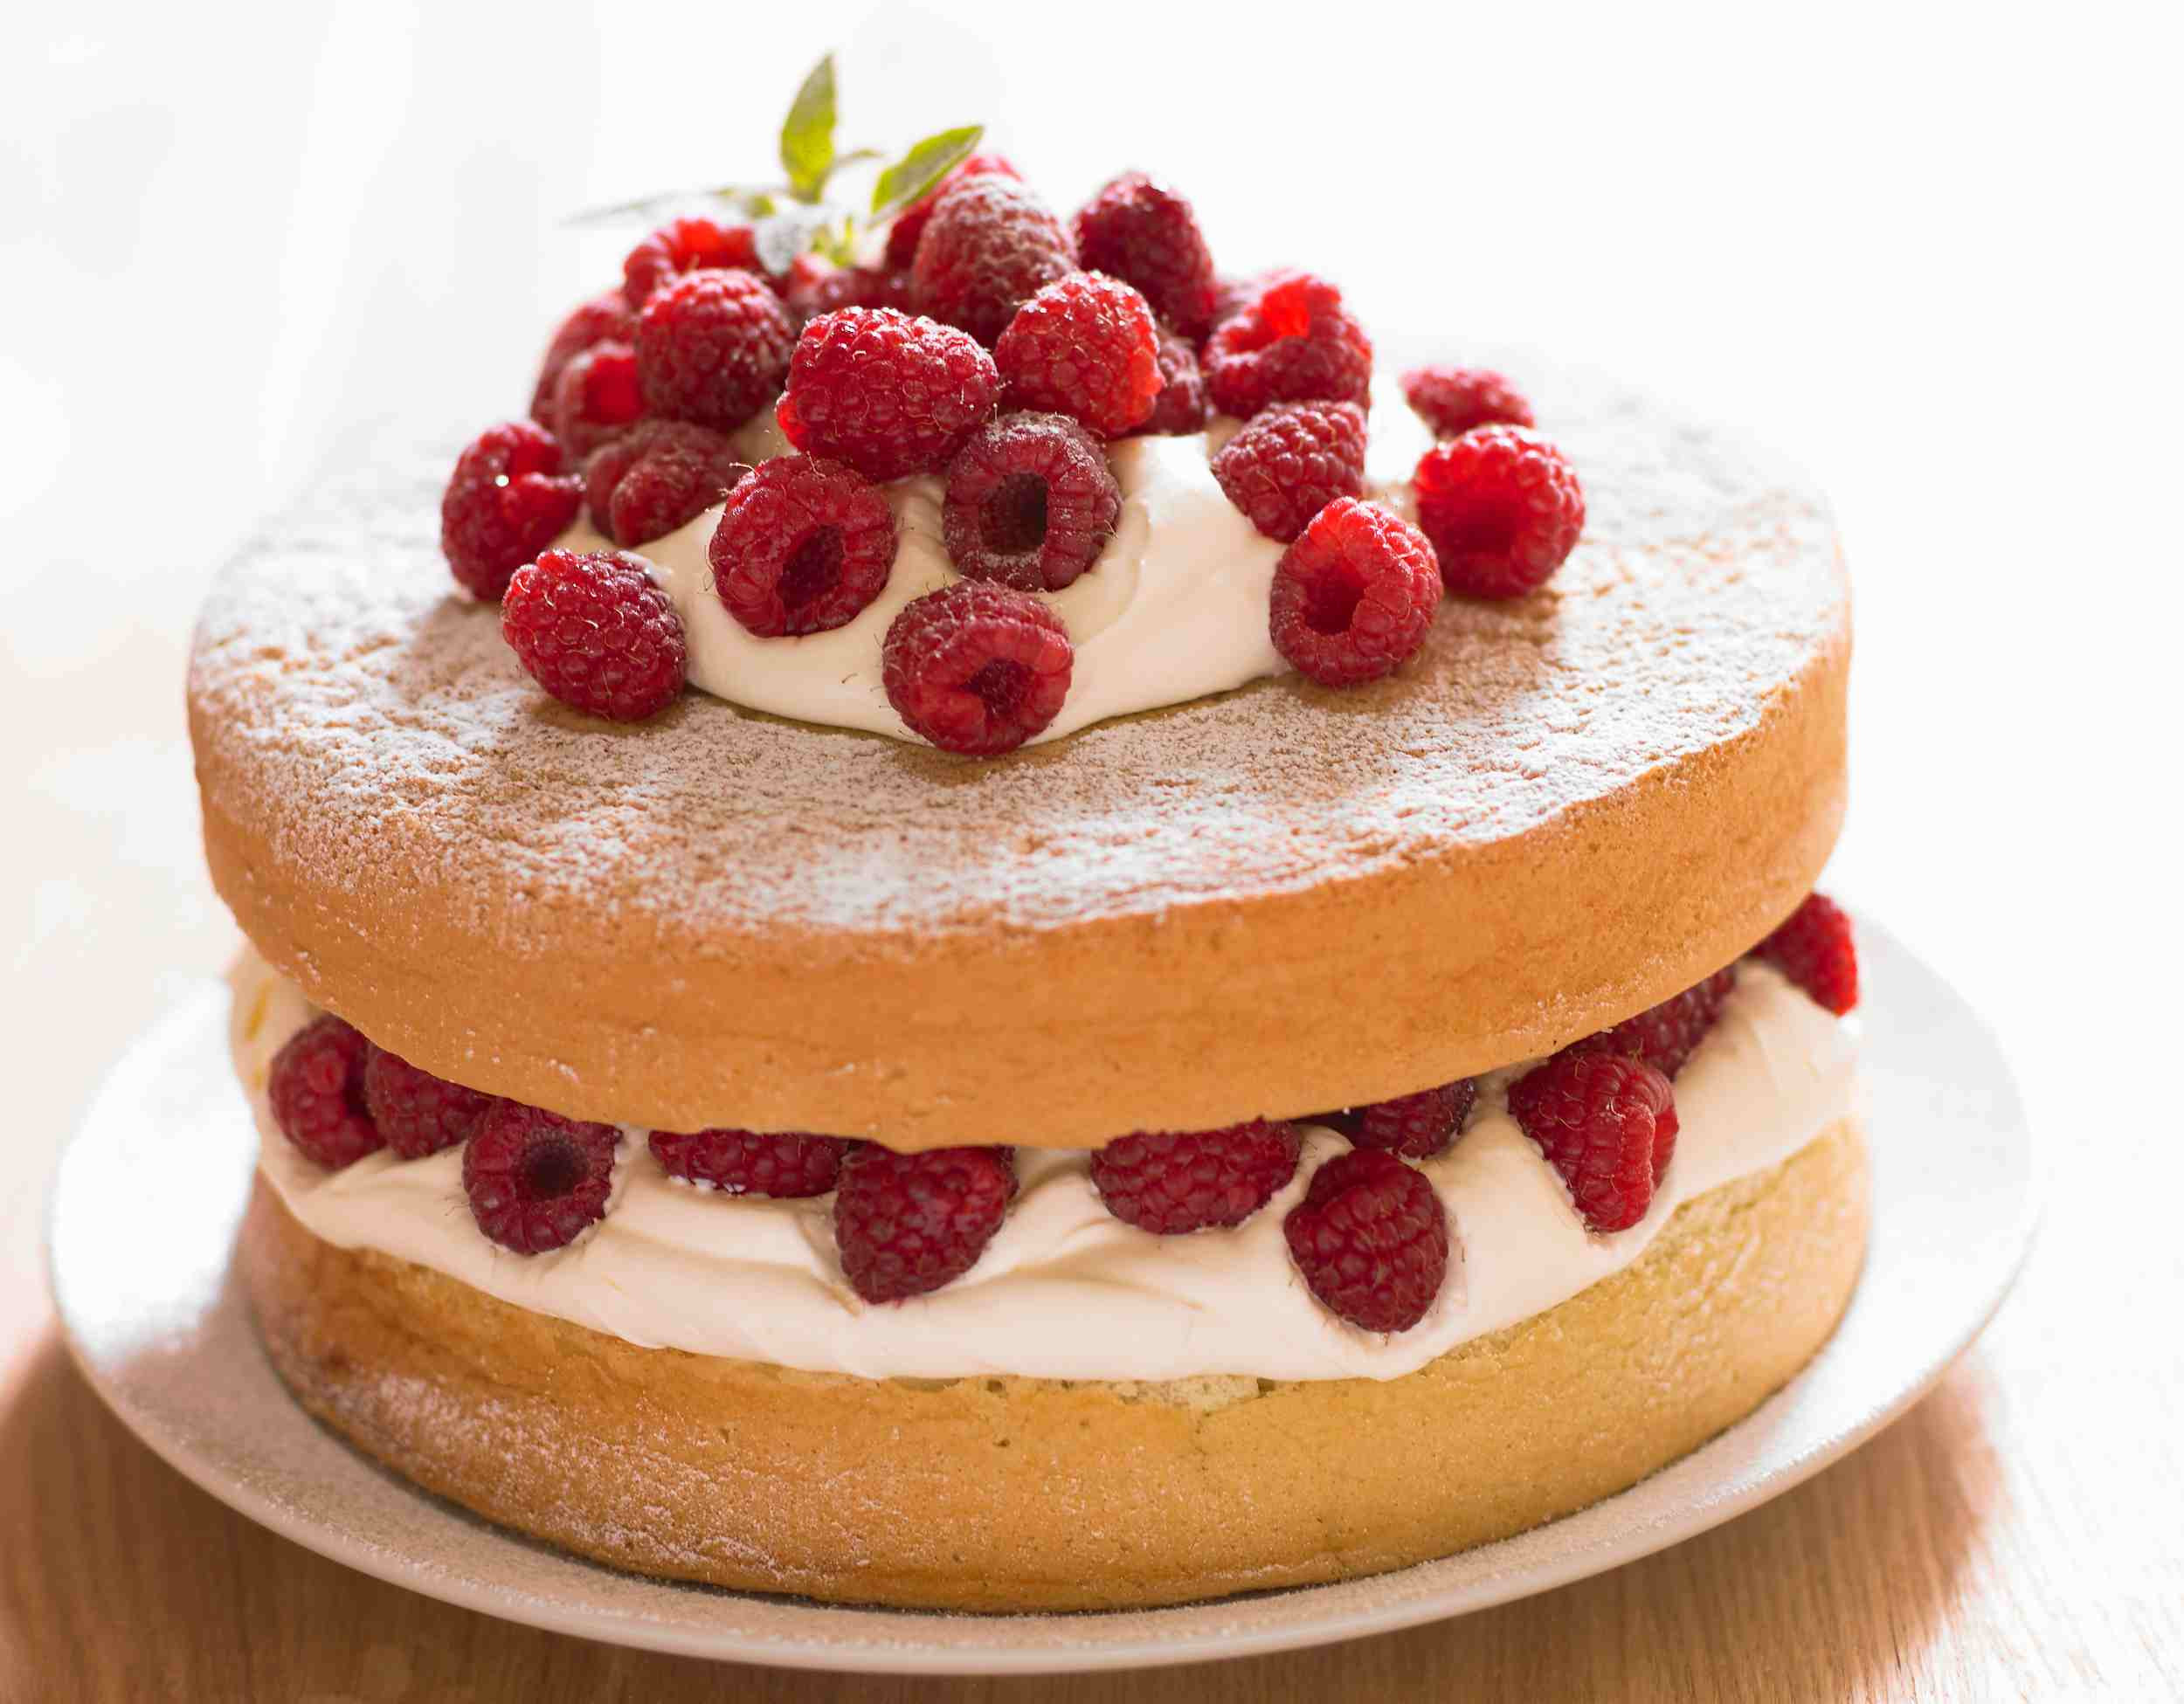 Sponge Cake Recipes
 Five Classic Cake Recipes From Scratch